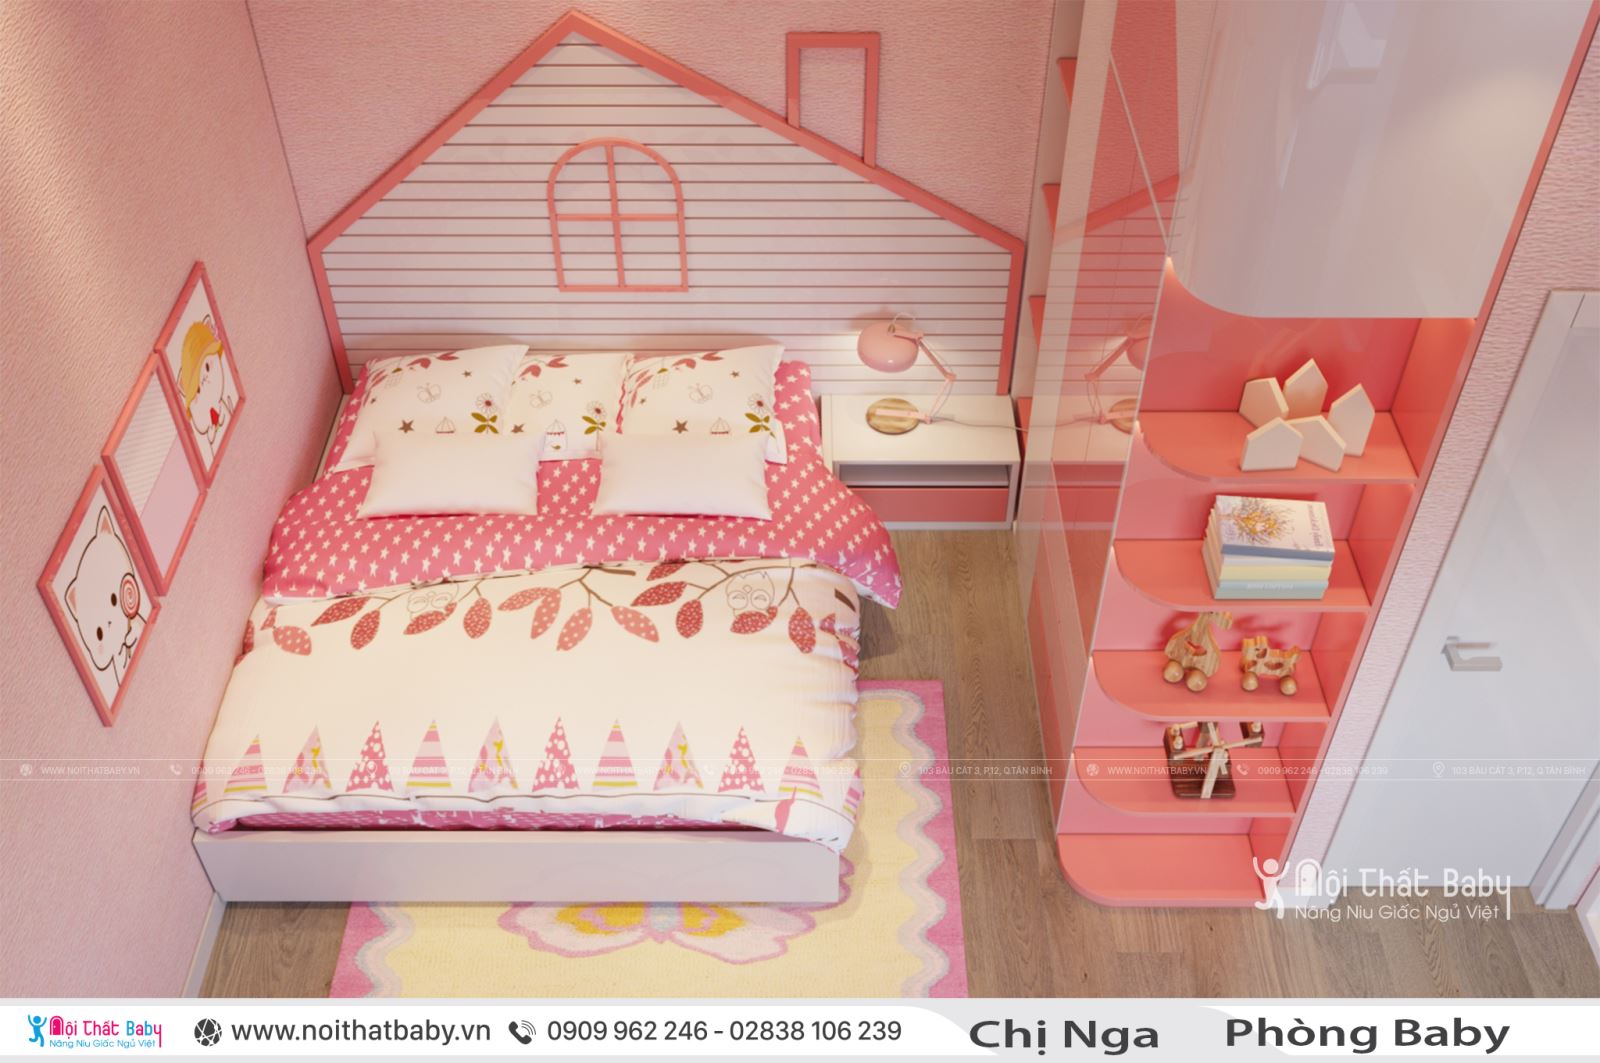 Những mẫu giường ngủ hình ngôi nhà cho baby của bạn